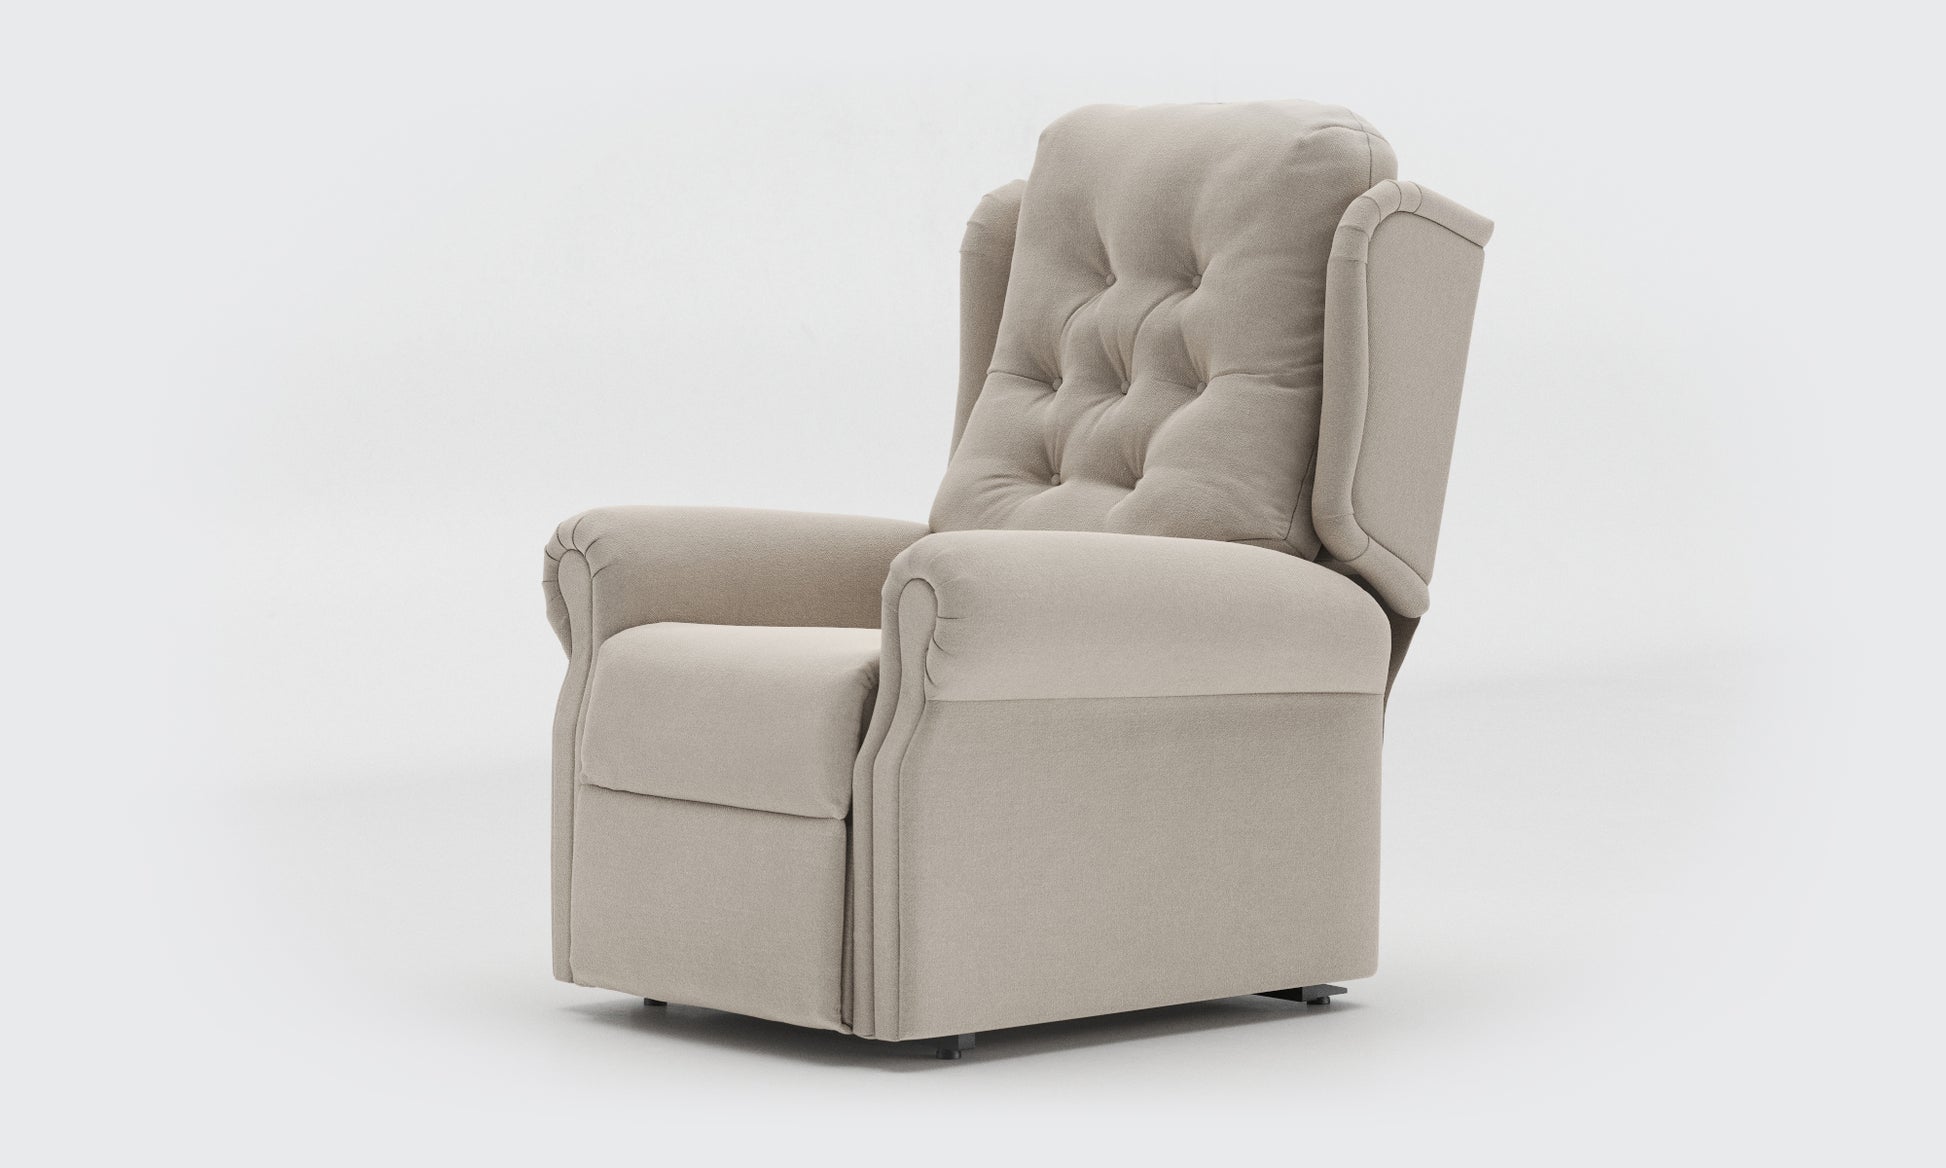 Adara Riser Recliner Chair standard buttons fabric Linen